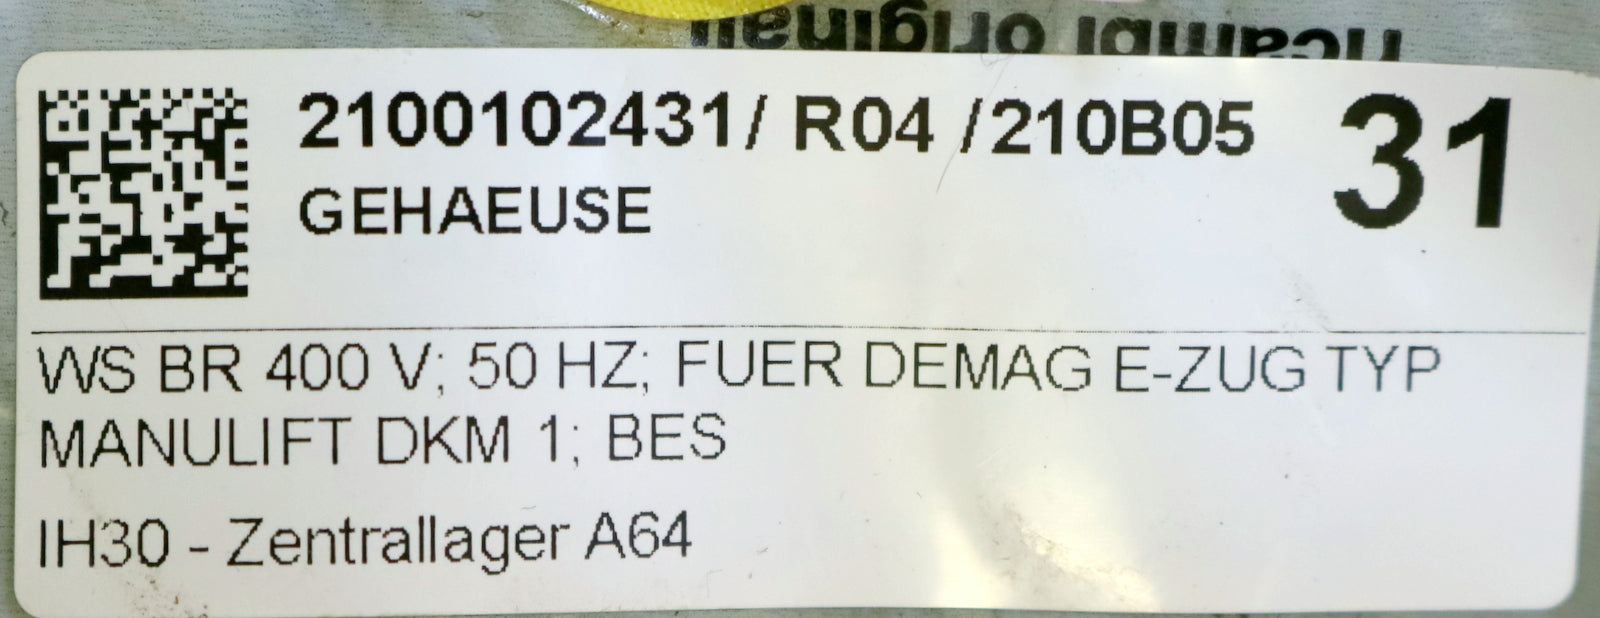 DEMAG Gehäuse WS BR 400 V für DEMAG E-Zug DKM 1 Best.Nr. 124 833 44 unbenutzt